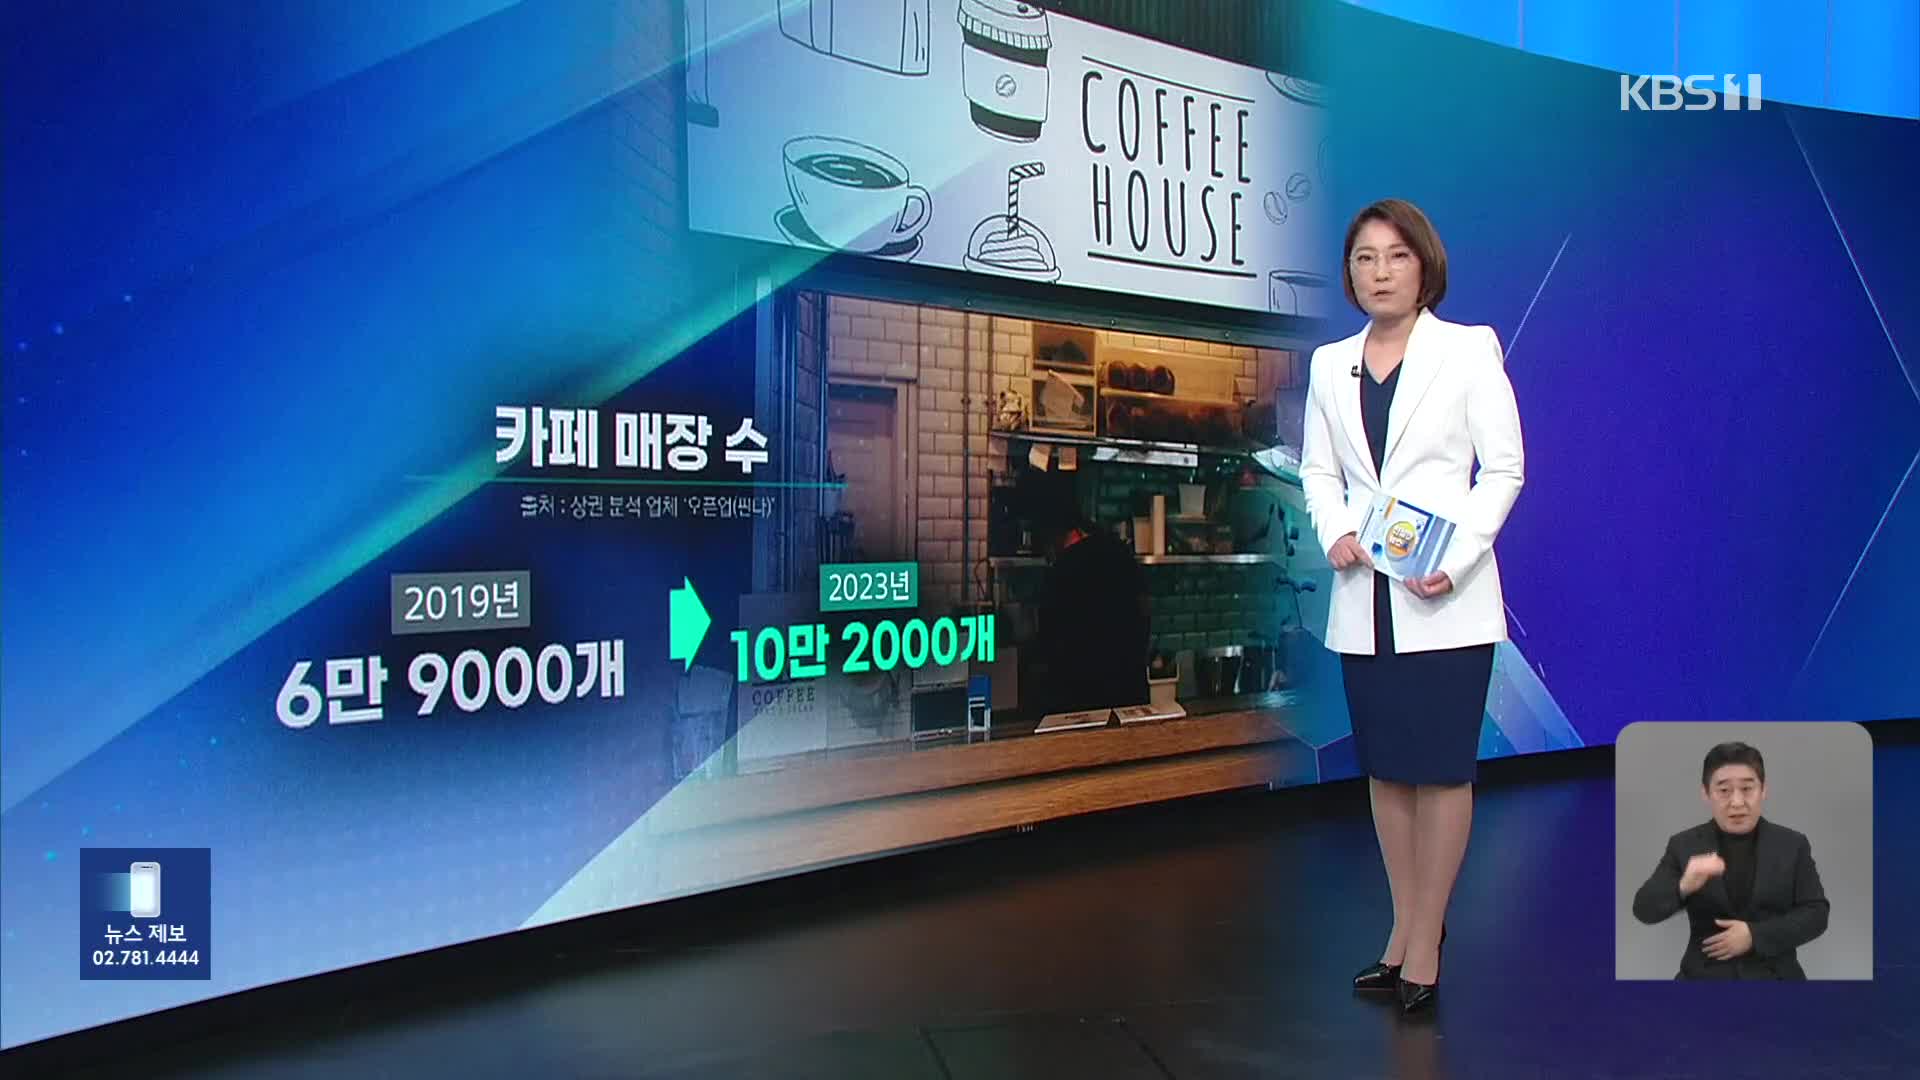 [친절한 뉴스K] 전국 카페 10만 ‘커피 공화국’…치킨집 넘어섰다